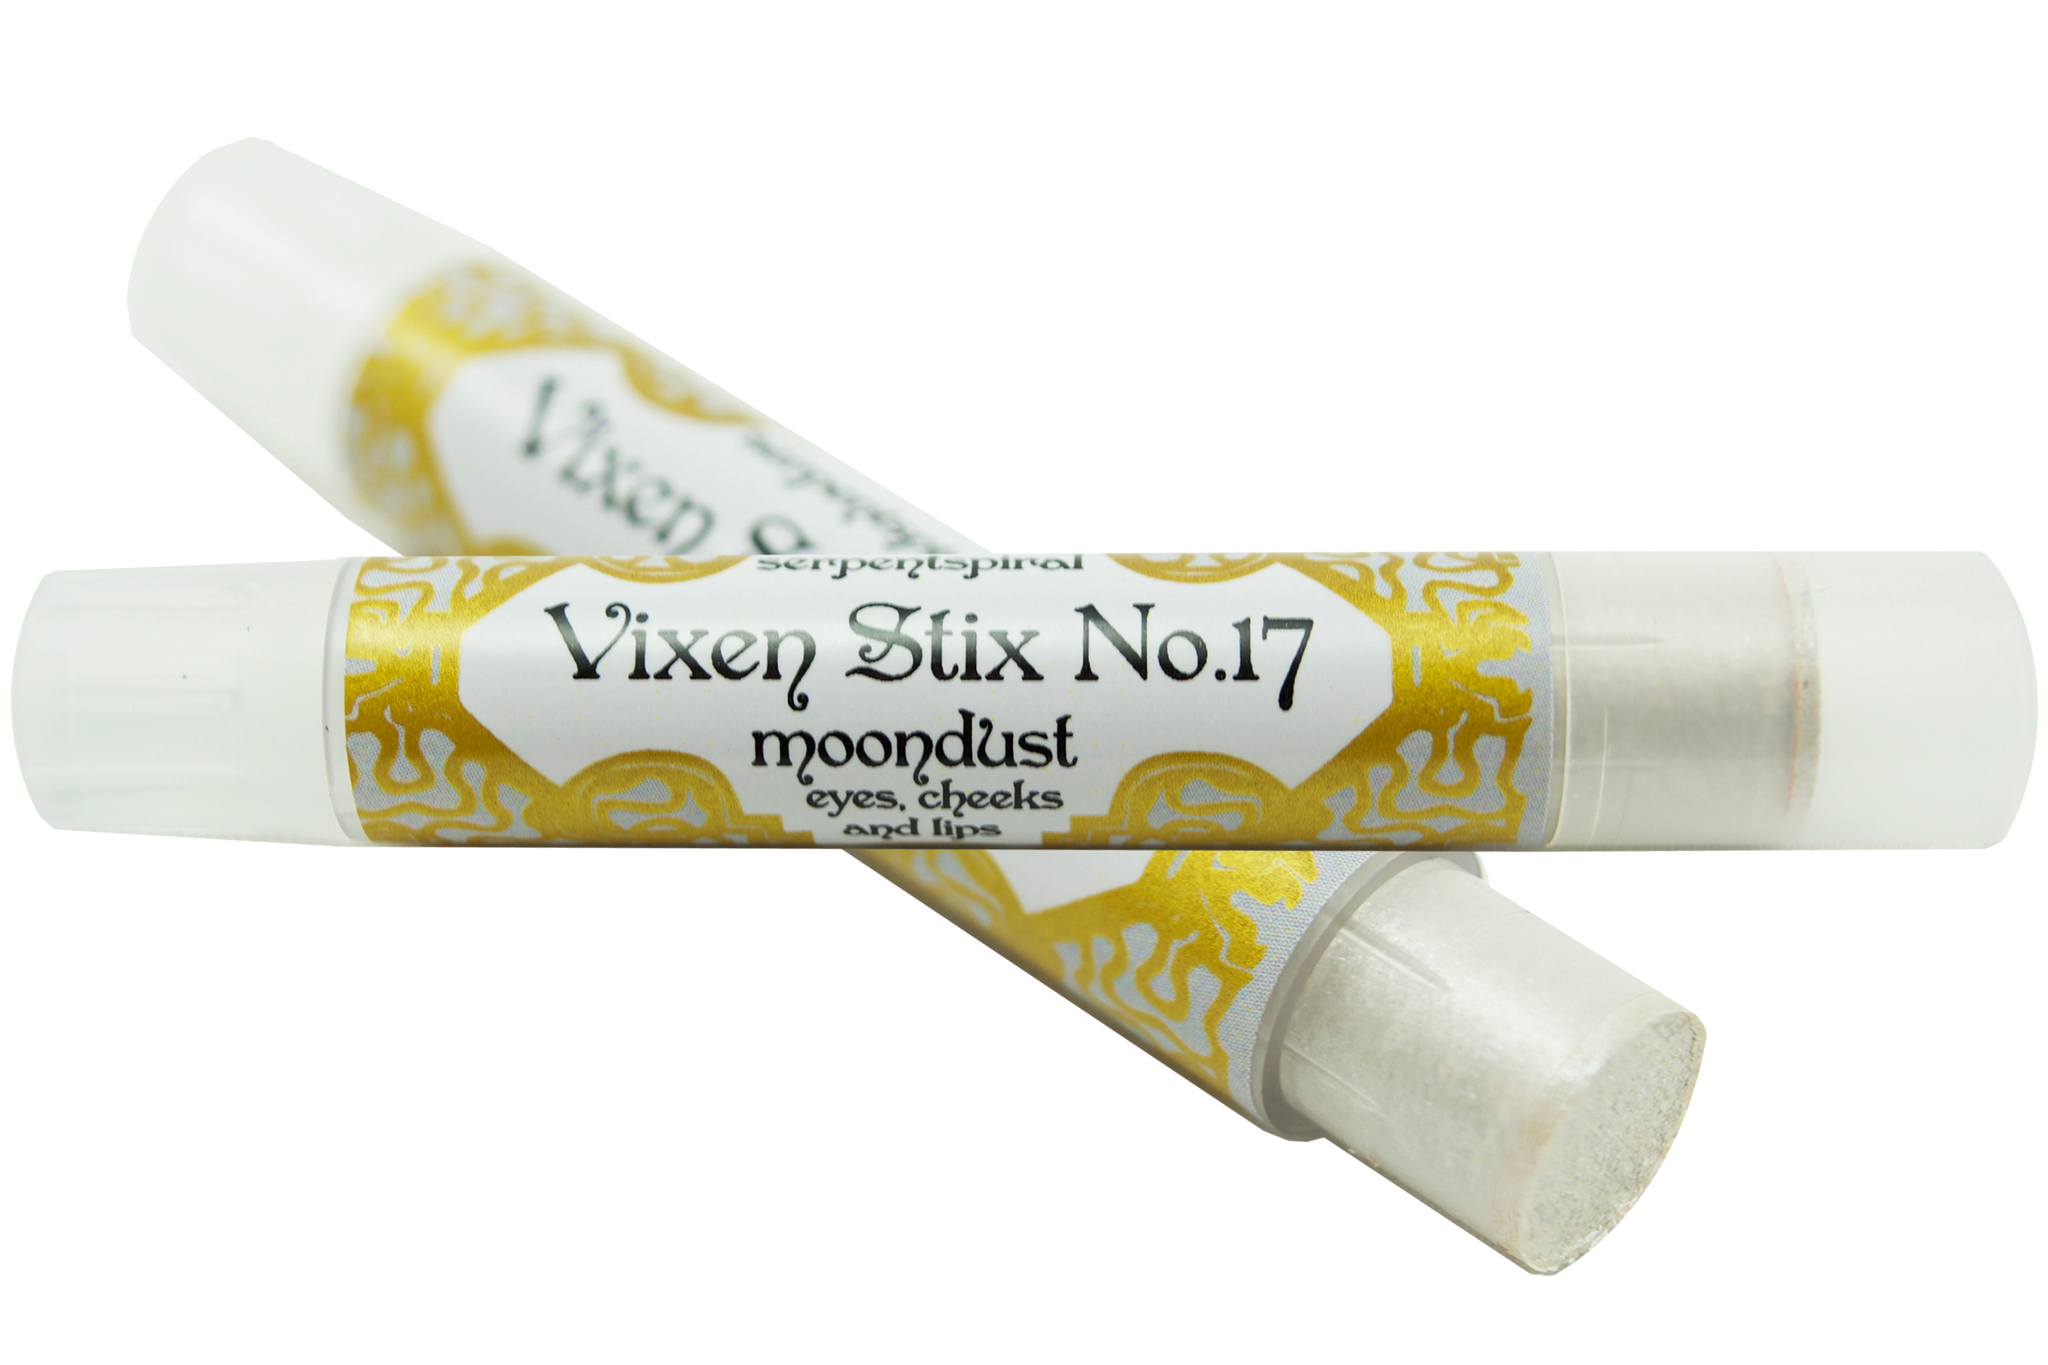 Vixen Stix No.17 ~ moondust organic highlighter stick